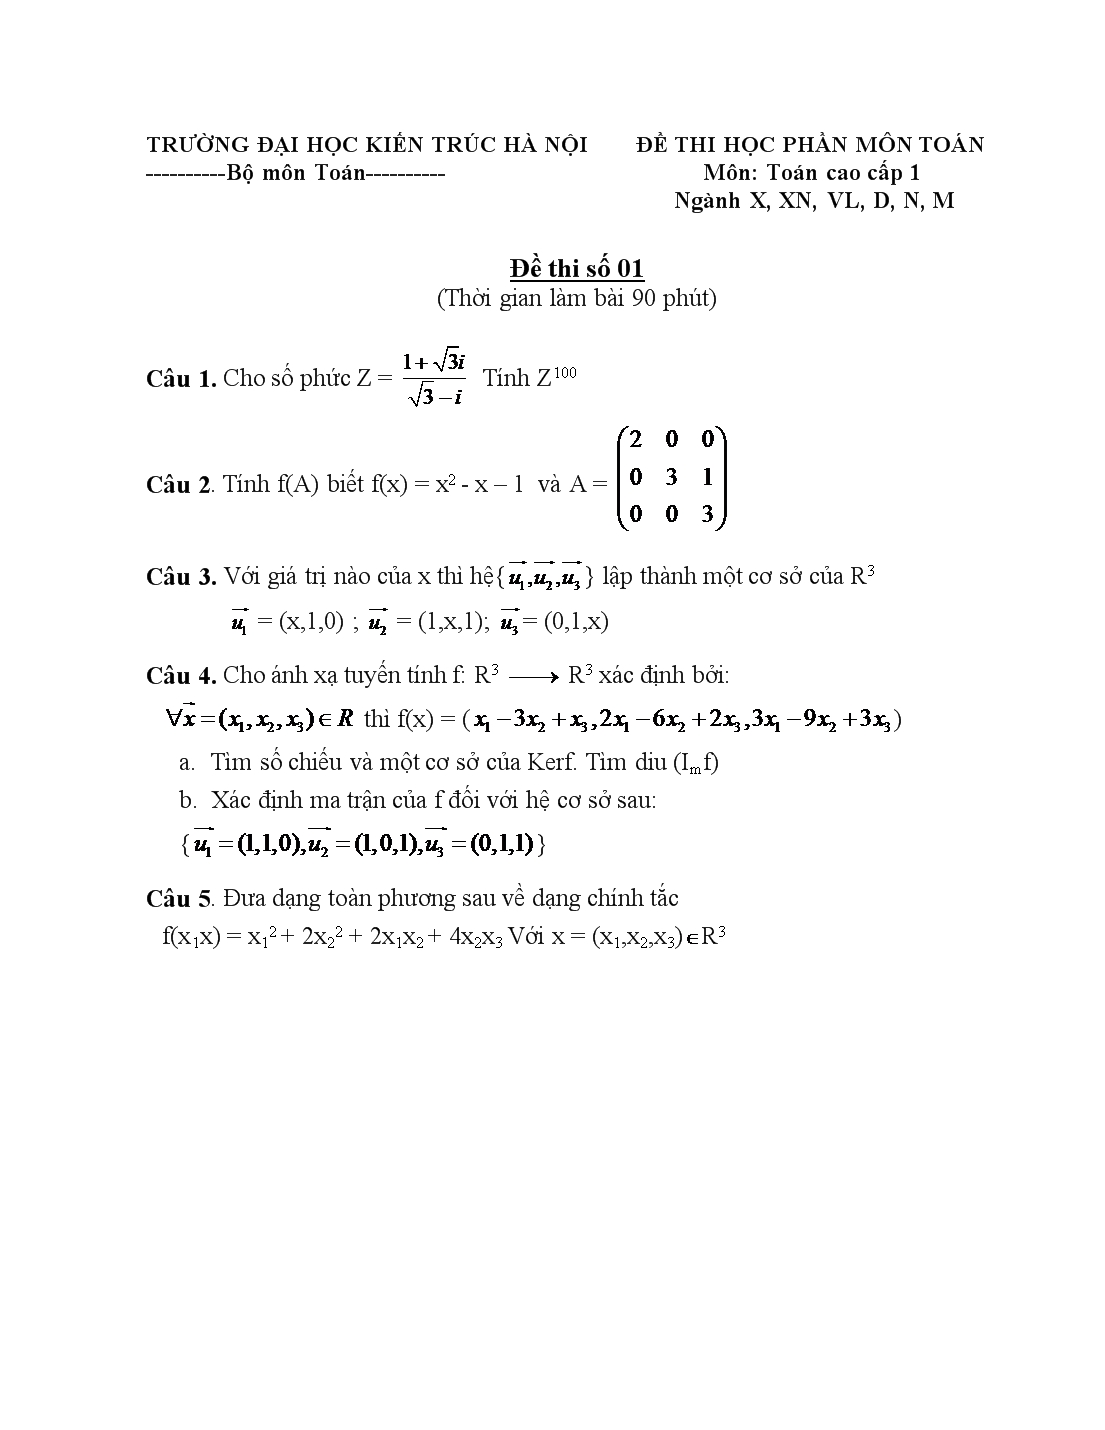 Đề thi học phần môn toán cao cấp 1 trang 1